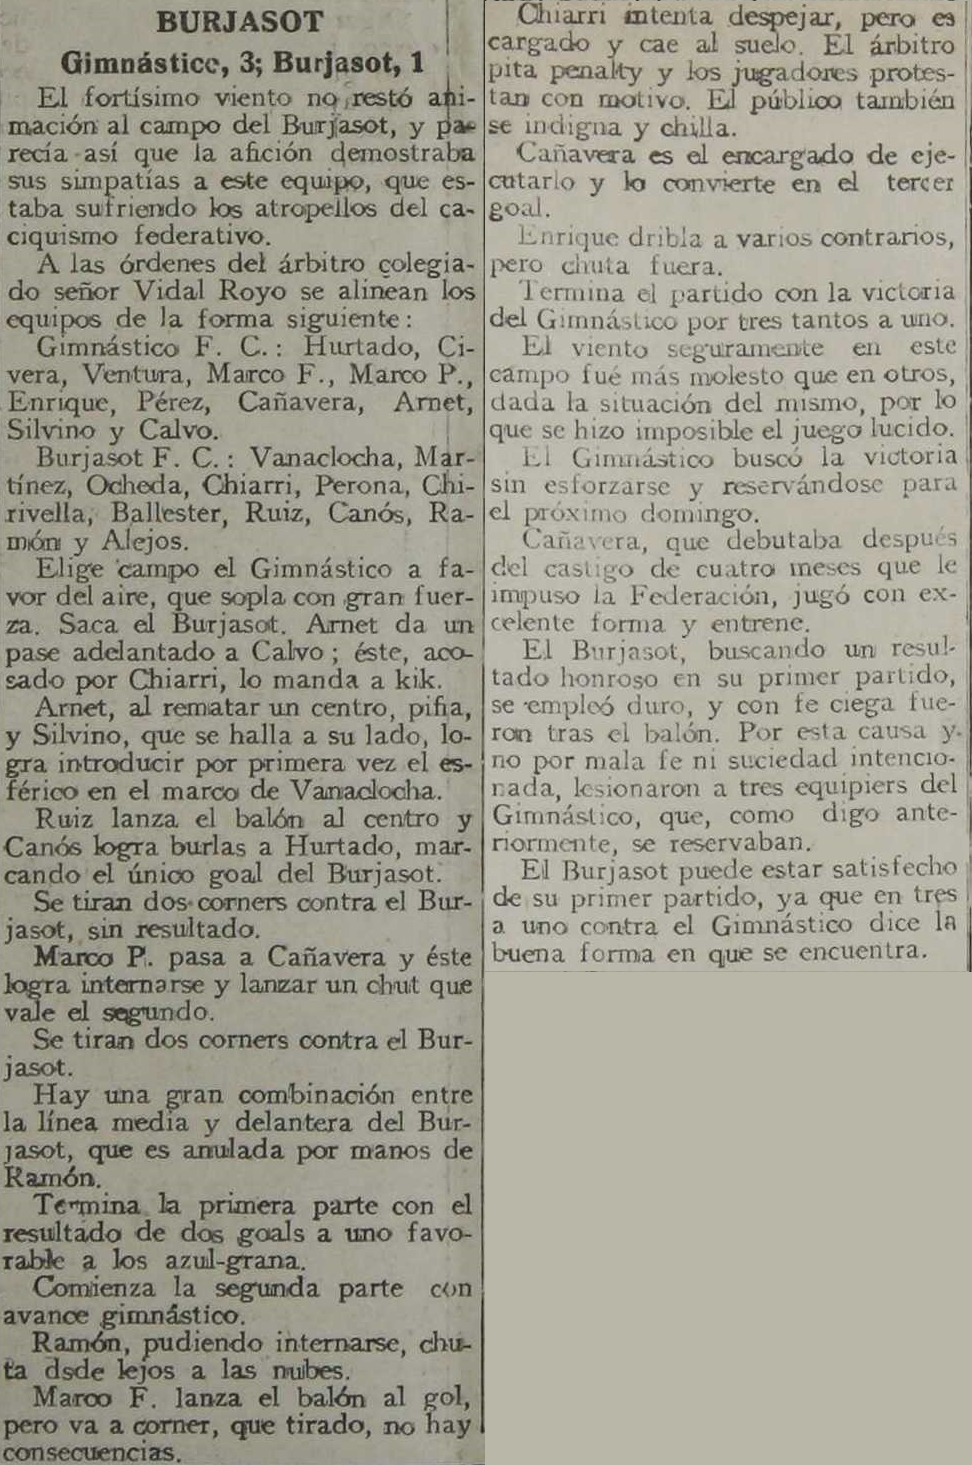 1925.11.08 (8 ноября 1925), Буржасот - Гимнастико, 1-3.png